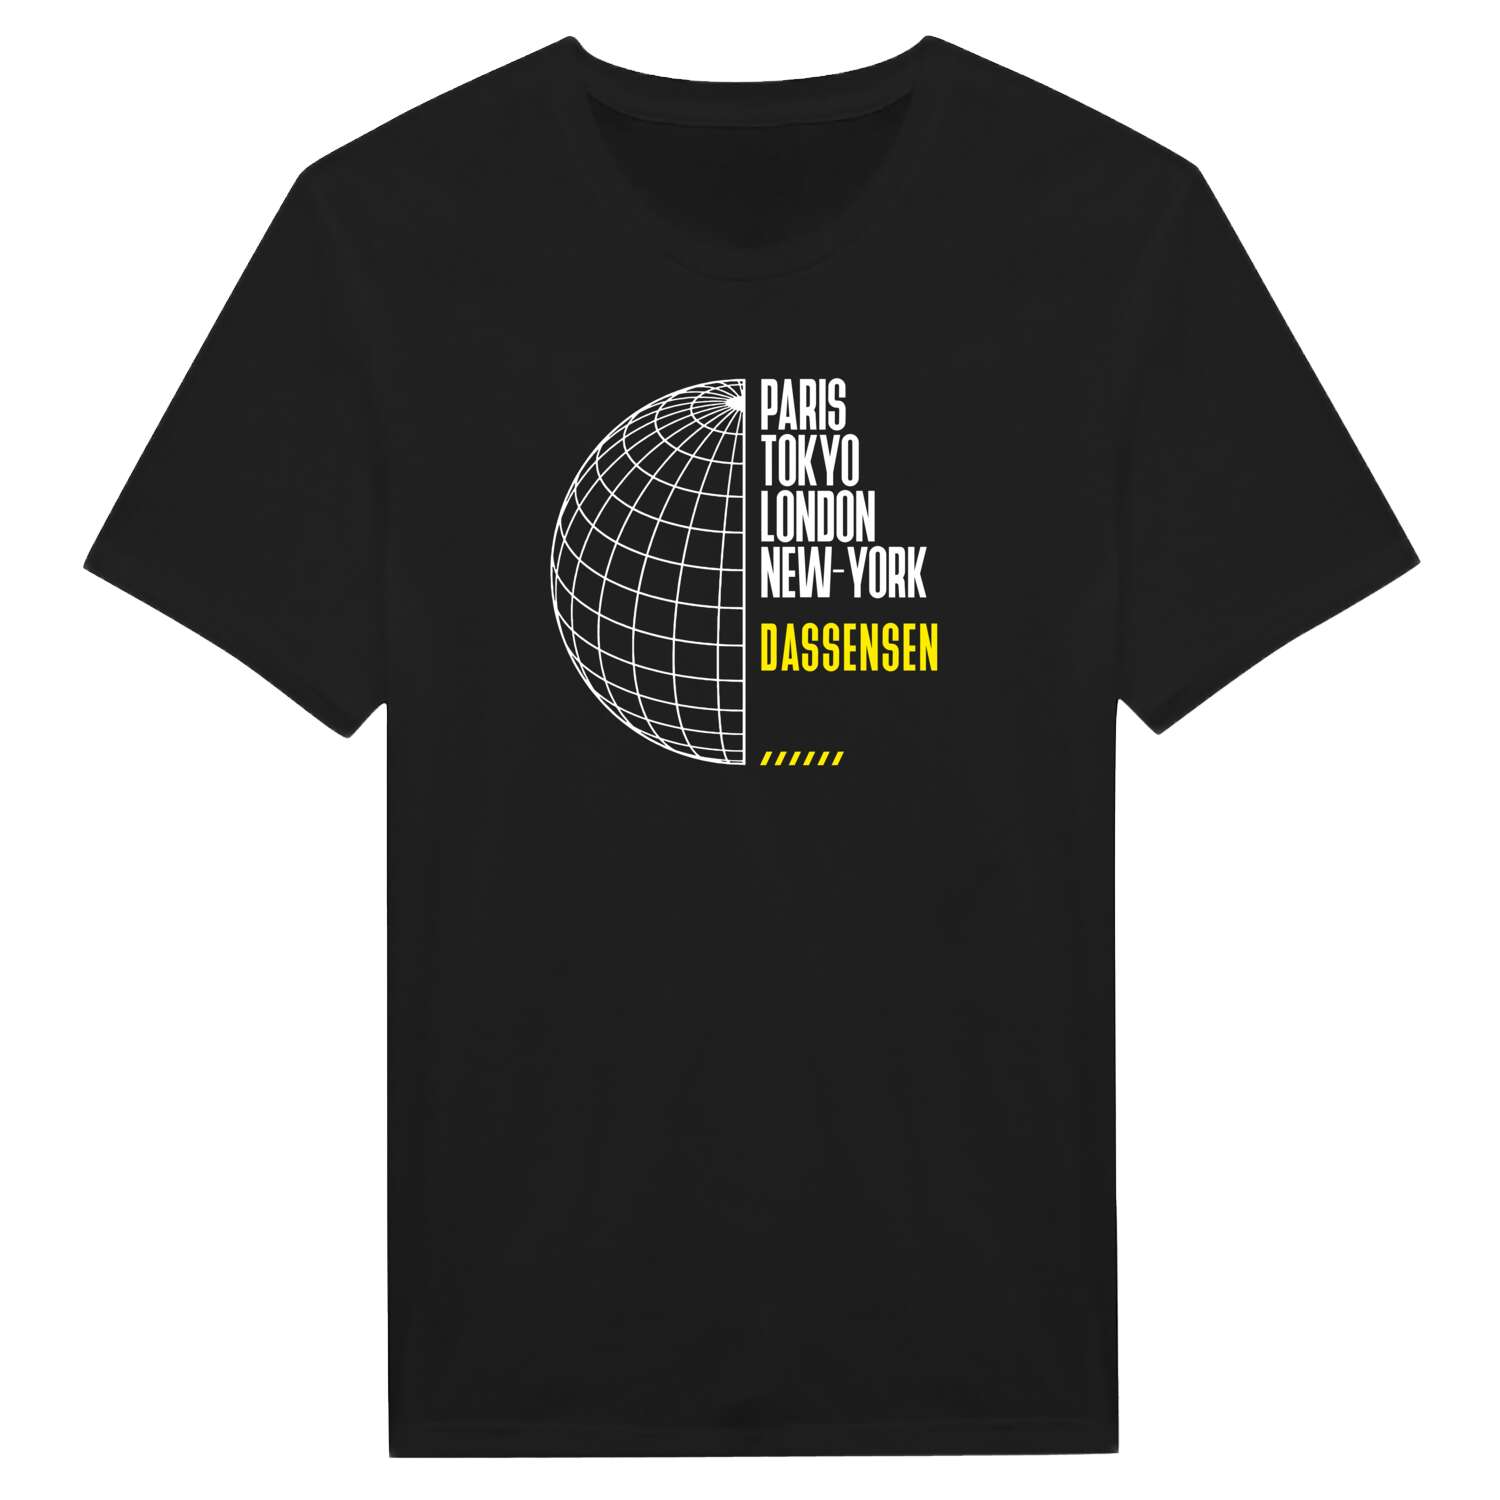 Dassensen T-Shirt »Paris Tokyo London«